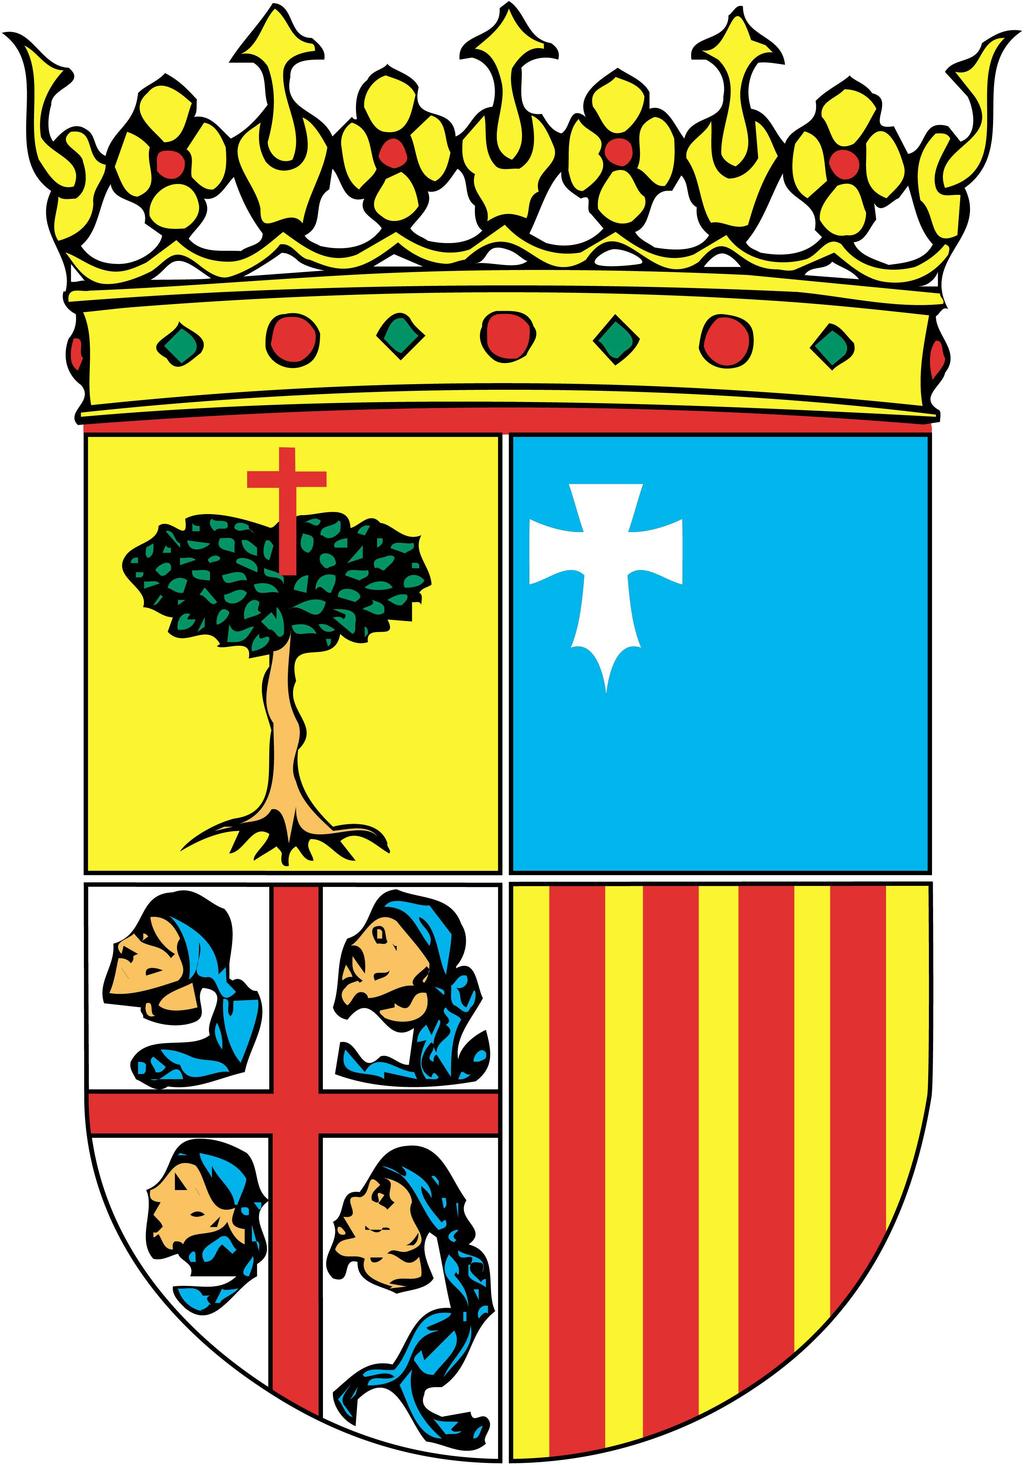 RE 063/2013 Acuerdo 47/2013, de 5 de septiembre de 2013, del Tribunal Administrativo de Contratos Públicos de Aragón, por el que se resuelve el recurso especial interpuesto por la ASOCIACIÓN DE